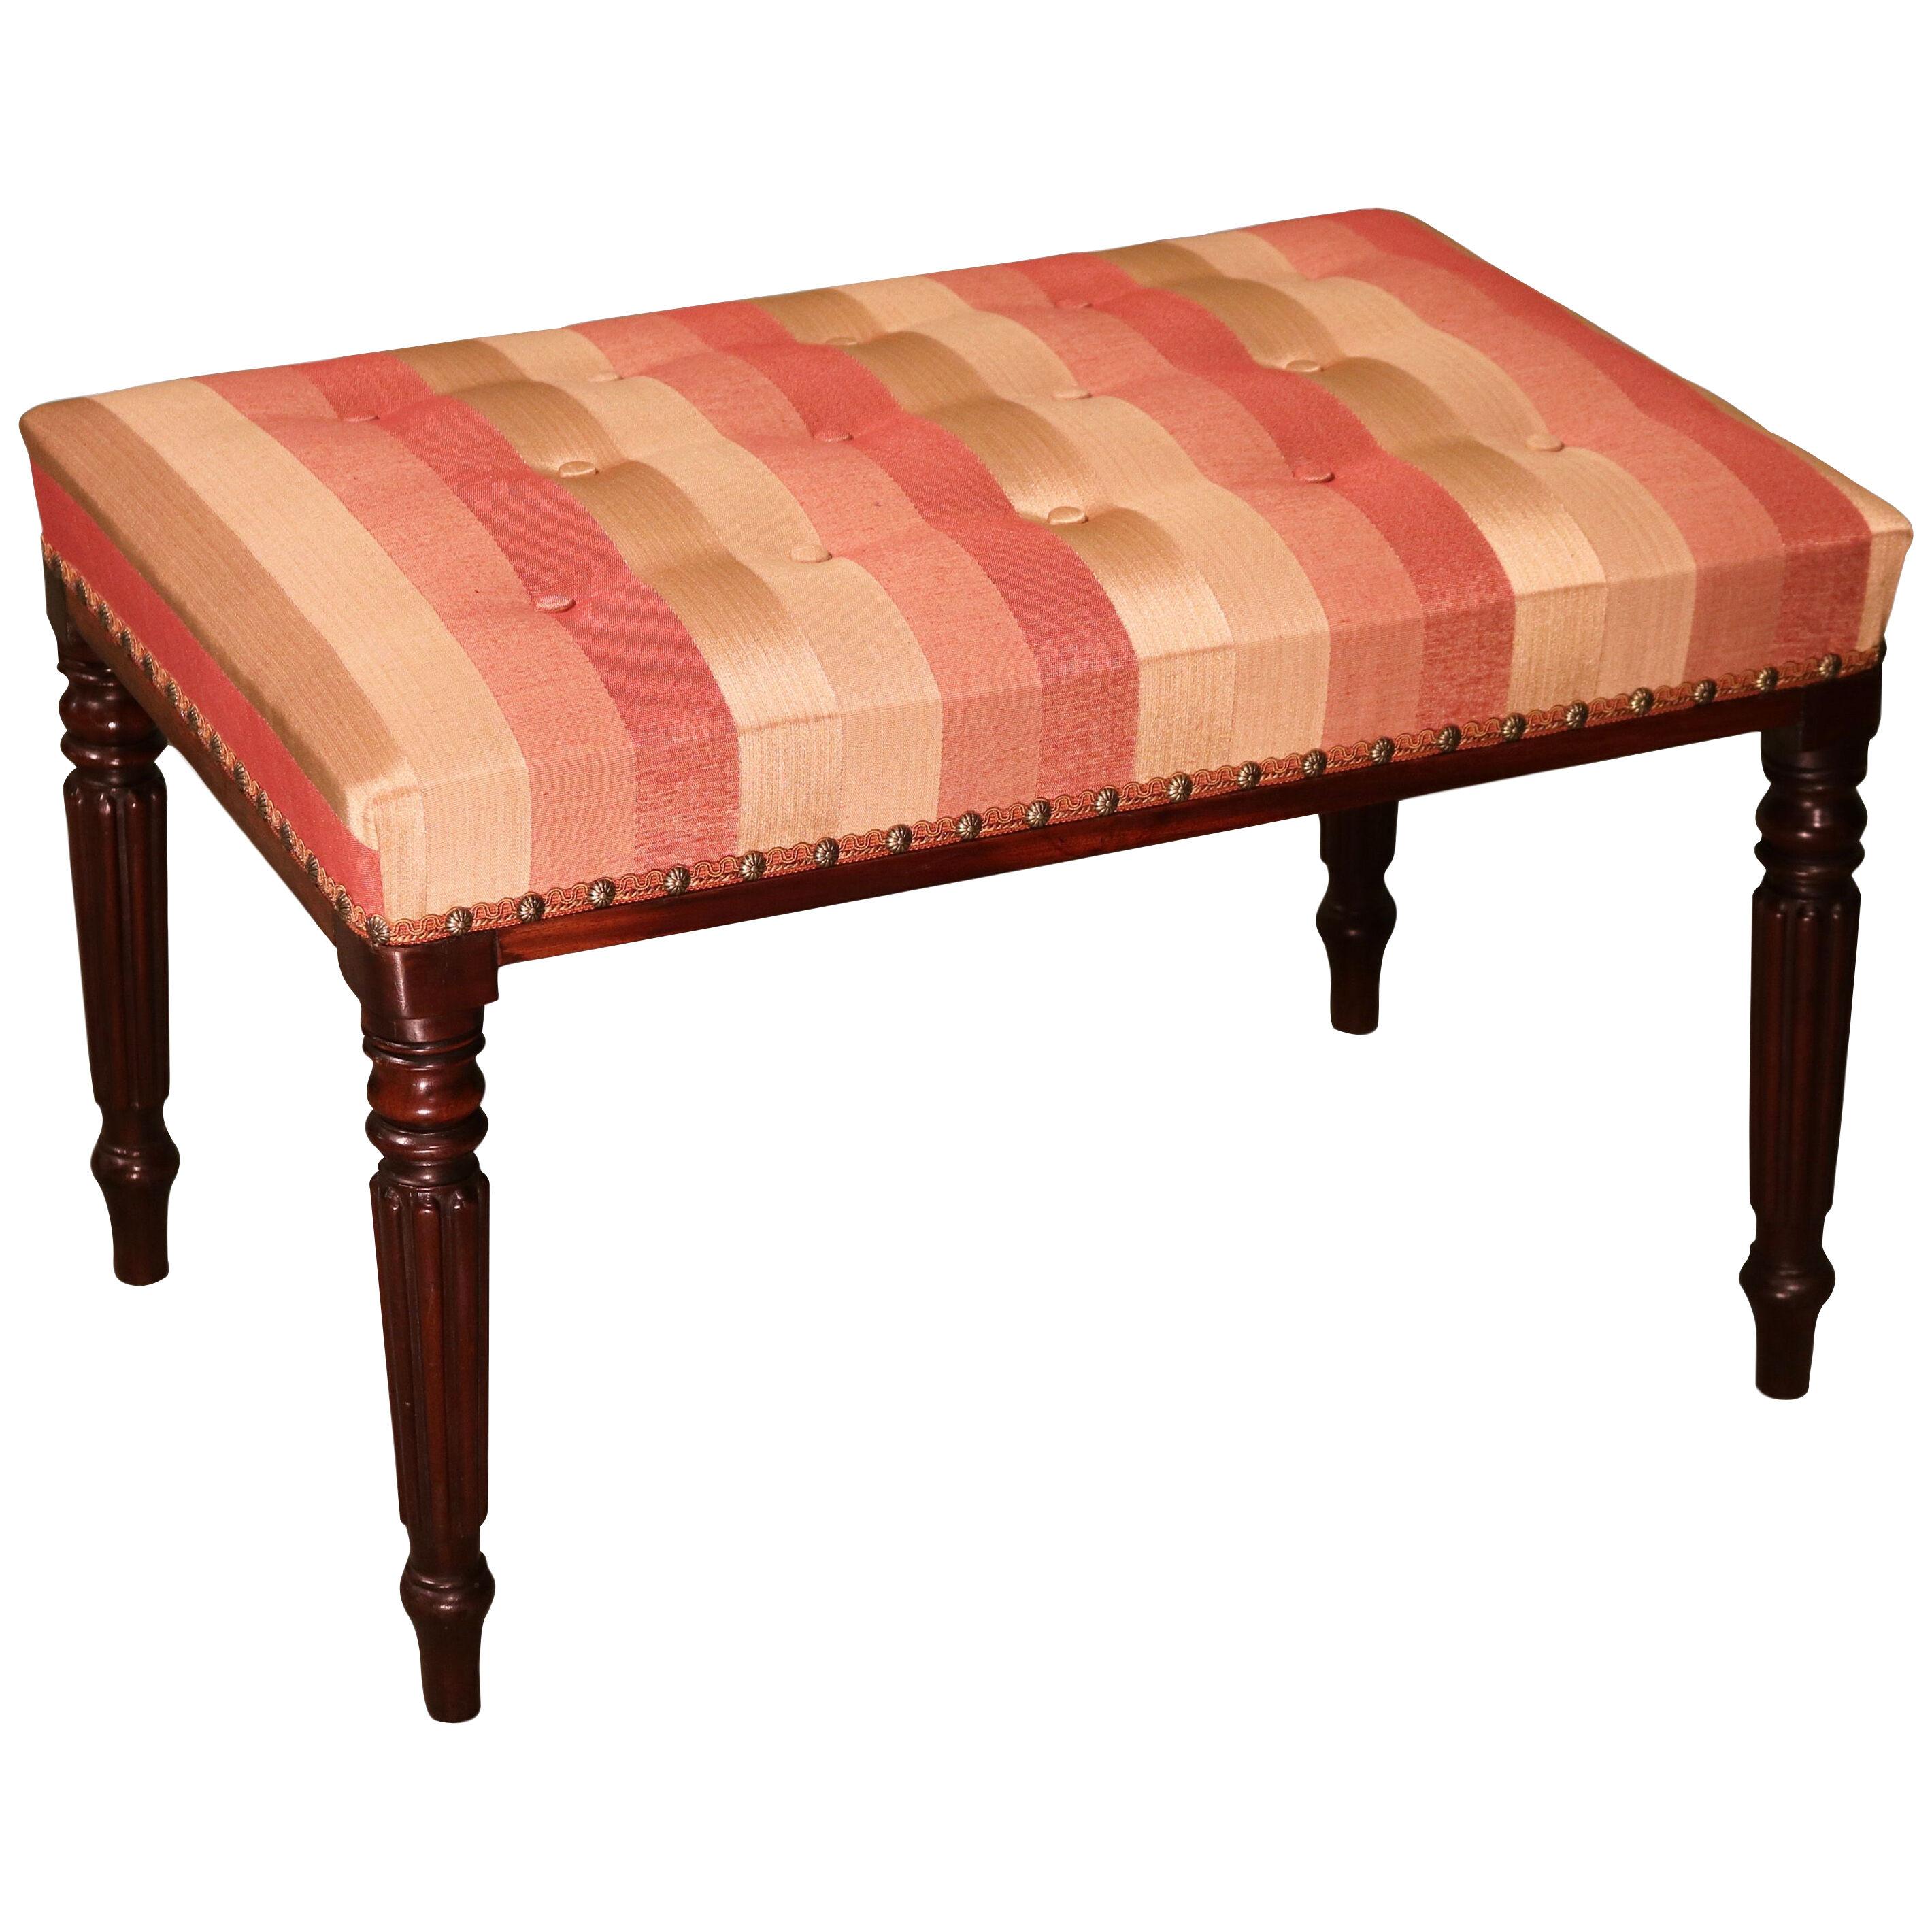 A Regency period mahogany rectangular stool